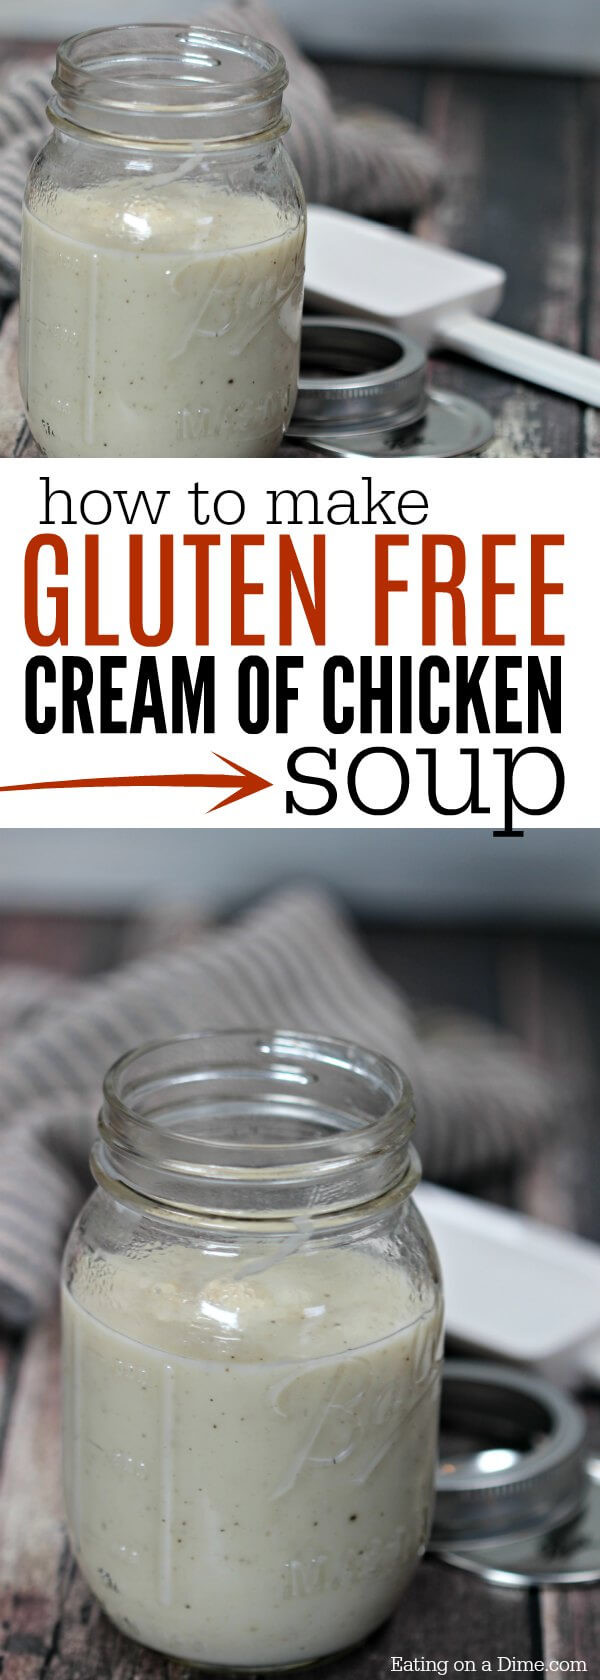 Cream Of Chicken Soup Gluten Free
 Gluten Free Cream of Chicken Soup Recipe Gluten Free